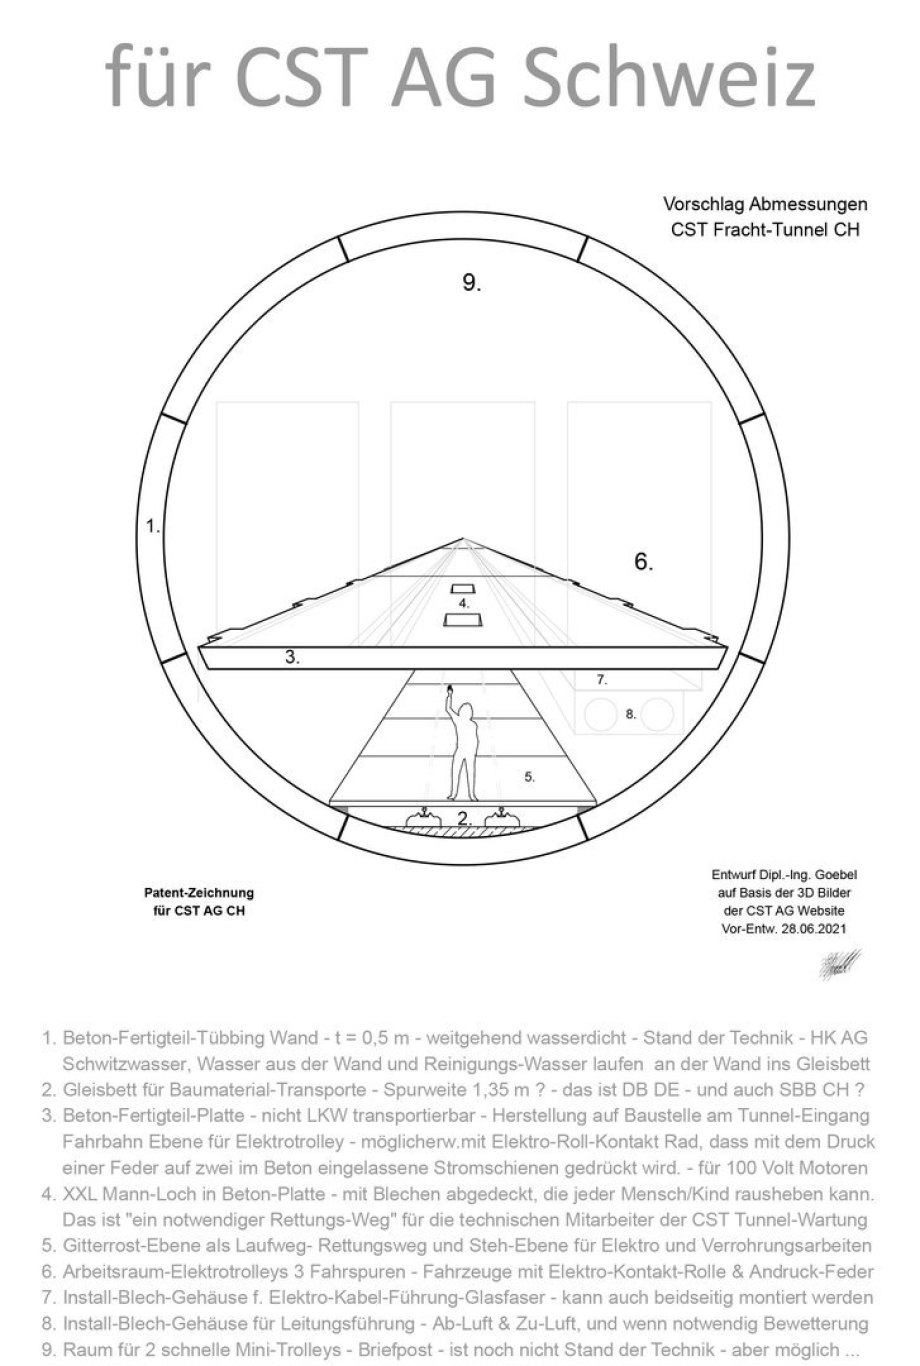 02_Bild_Entwurf-Tunnel-Querschnitt_für_CST_Patent_ohne_Vermaßung_Ing_Goebel